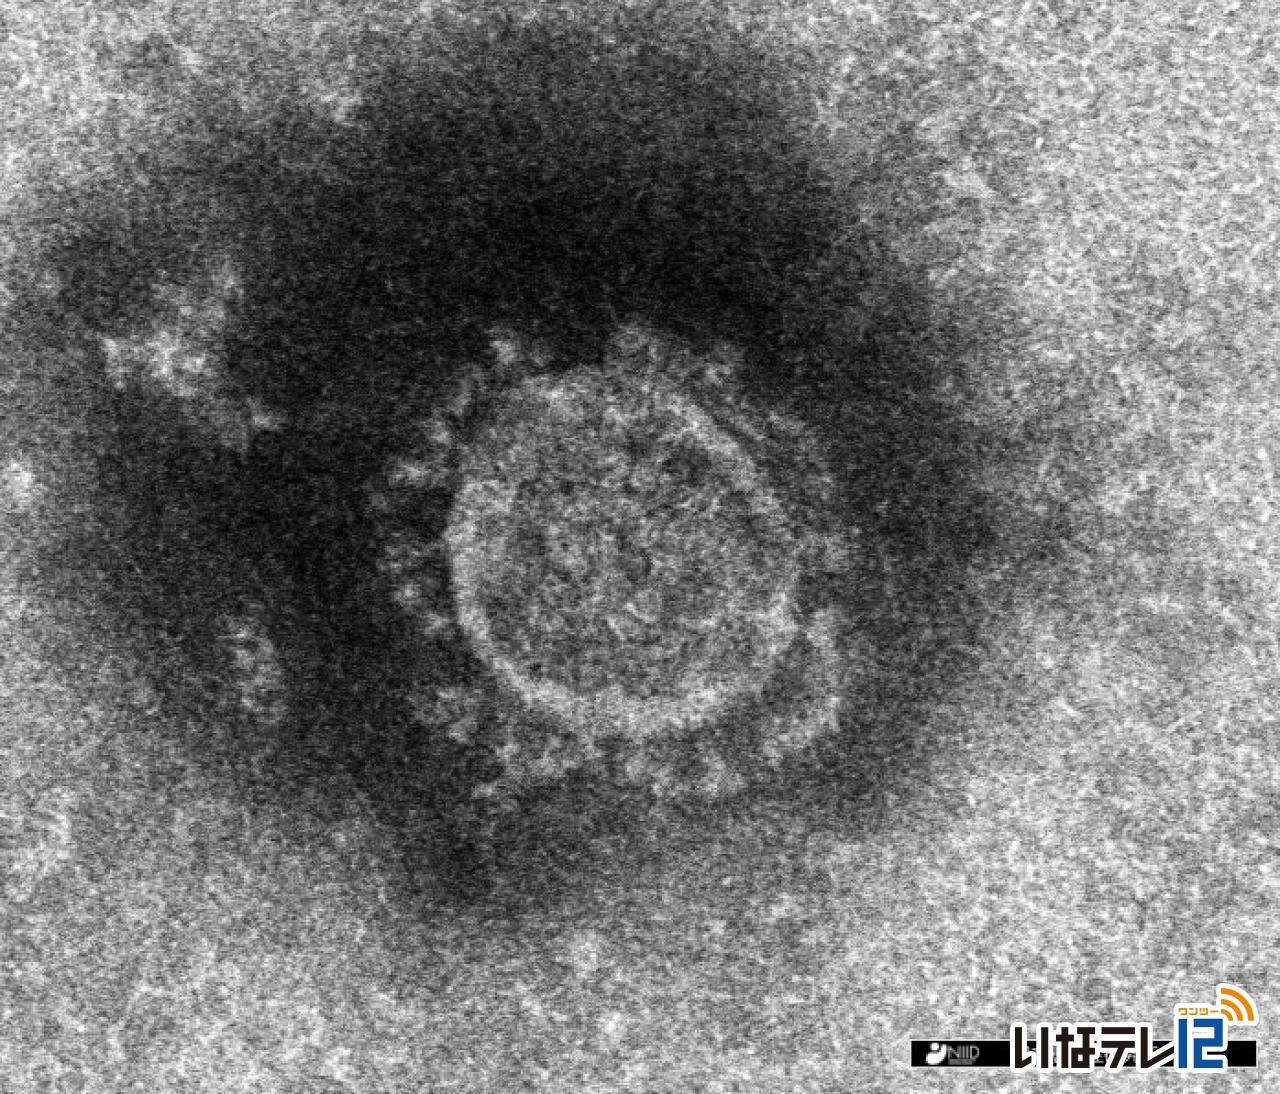 長野県内で新たに上伊那の１０人を含む１７７人の新型コロナウイルス感染確認